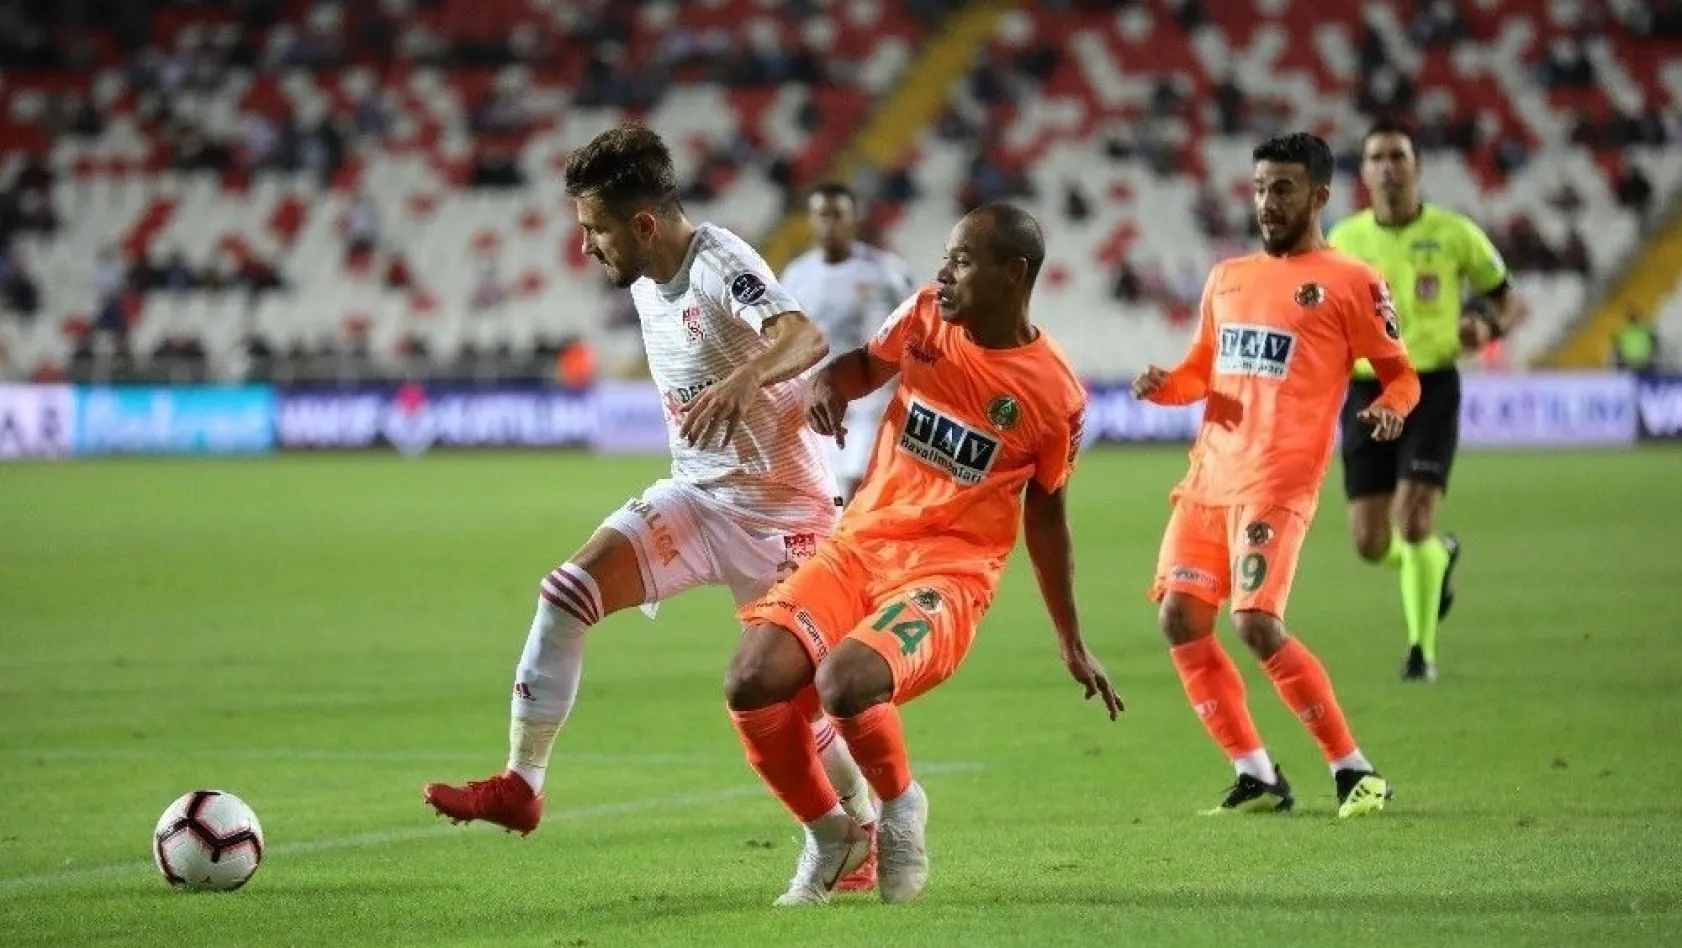 Spor Toto Süper Lig: Demir Grup Sivasspor: 1 - Aytemiz Alanyaspor: 0 (Maç sonucu)
